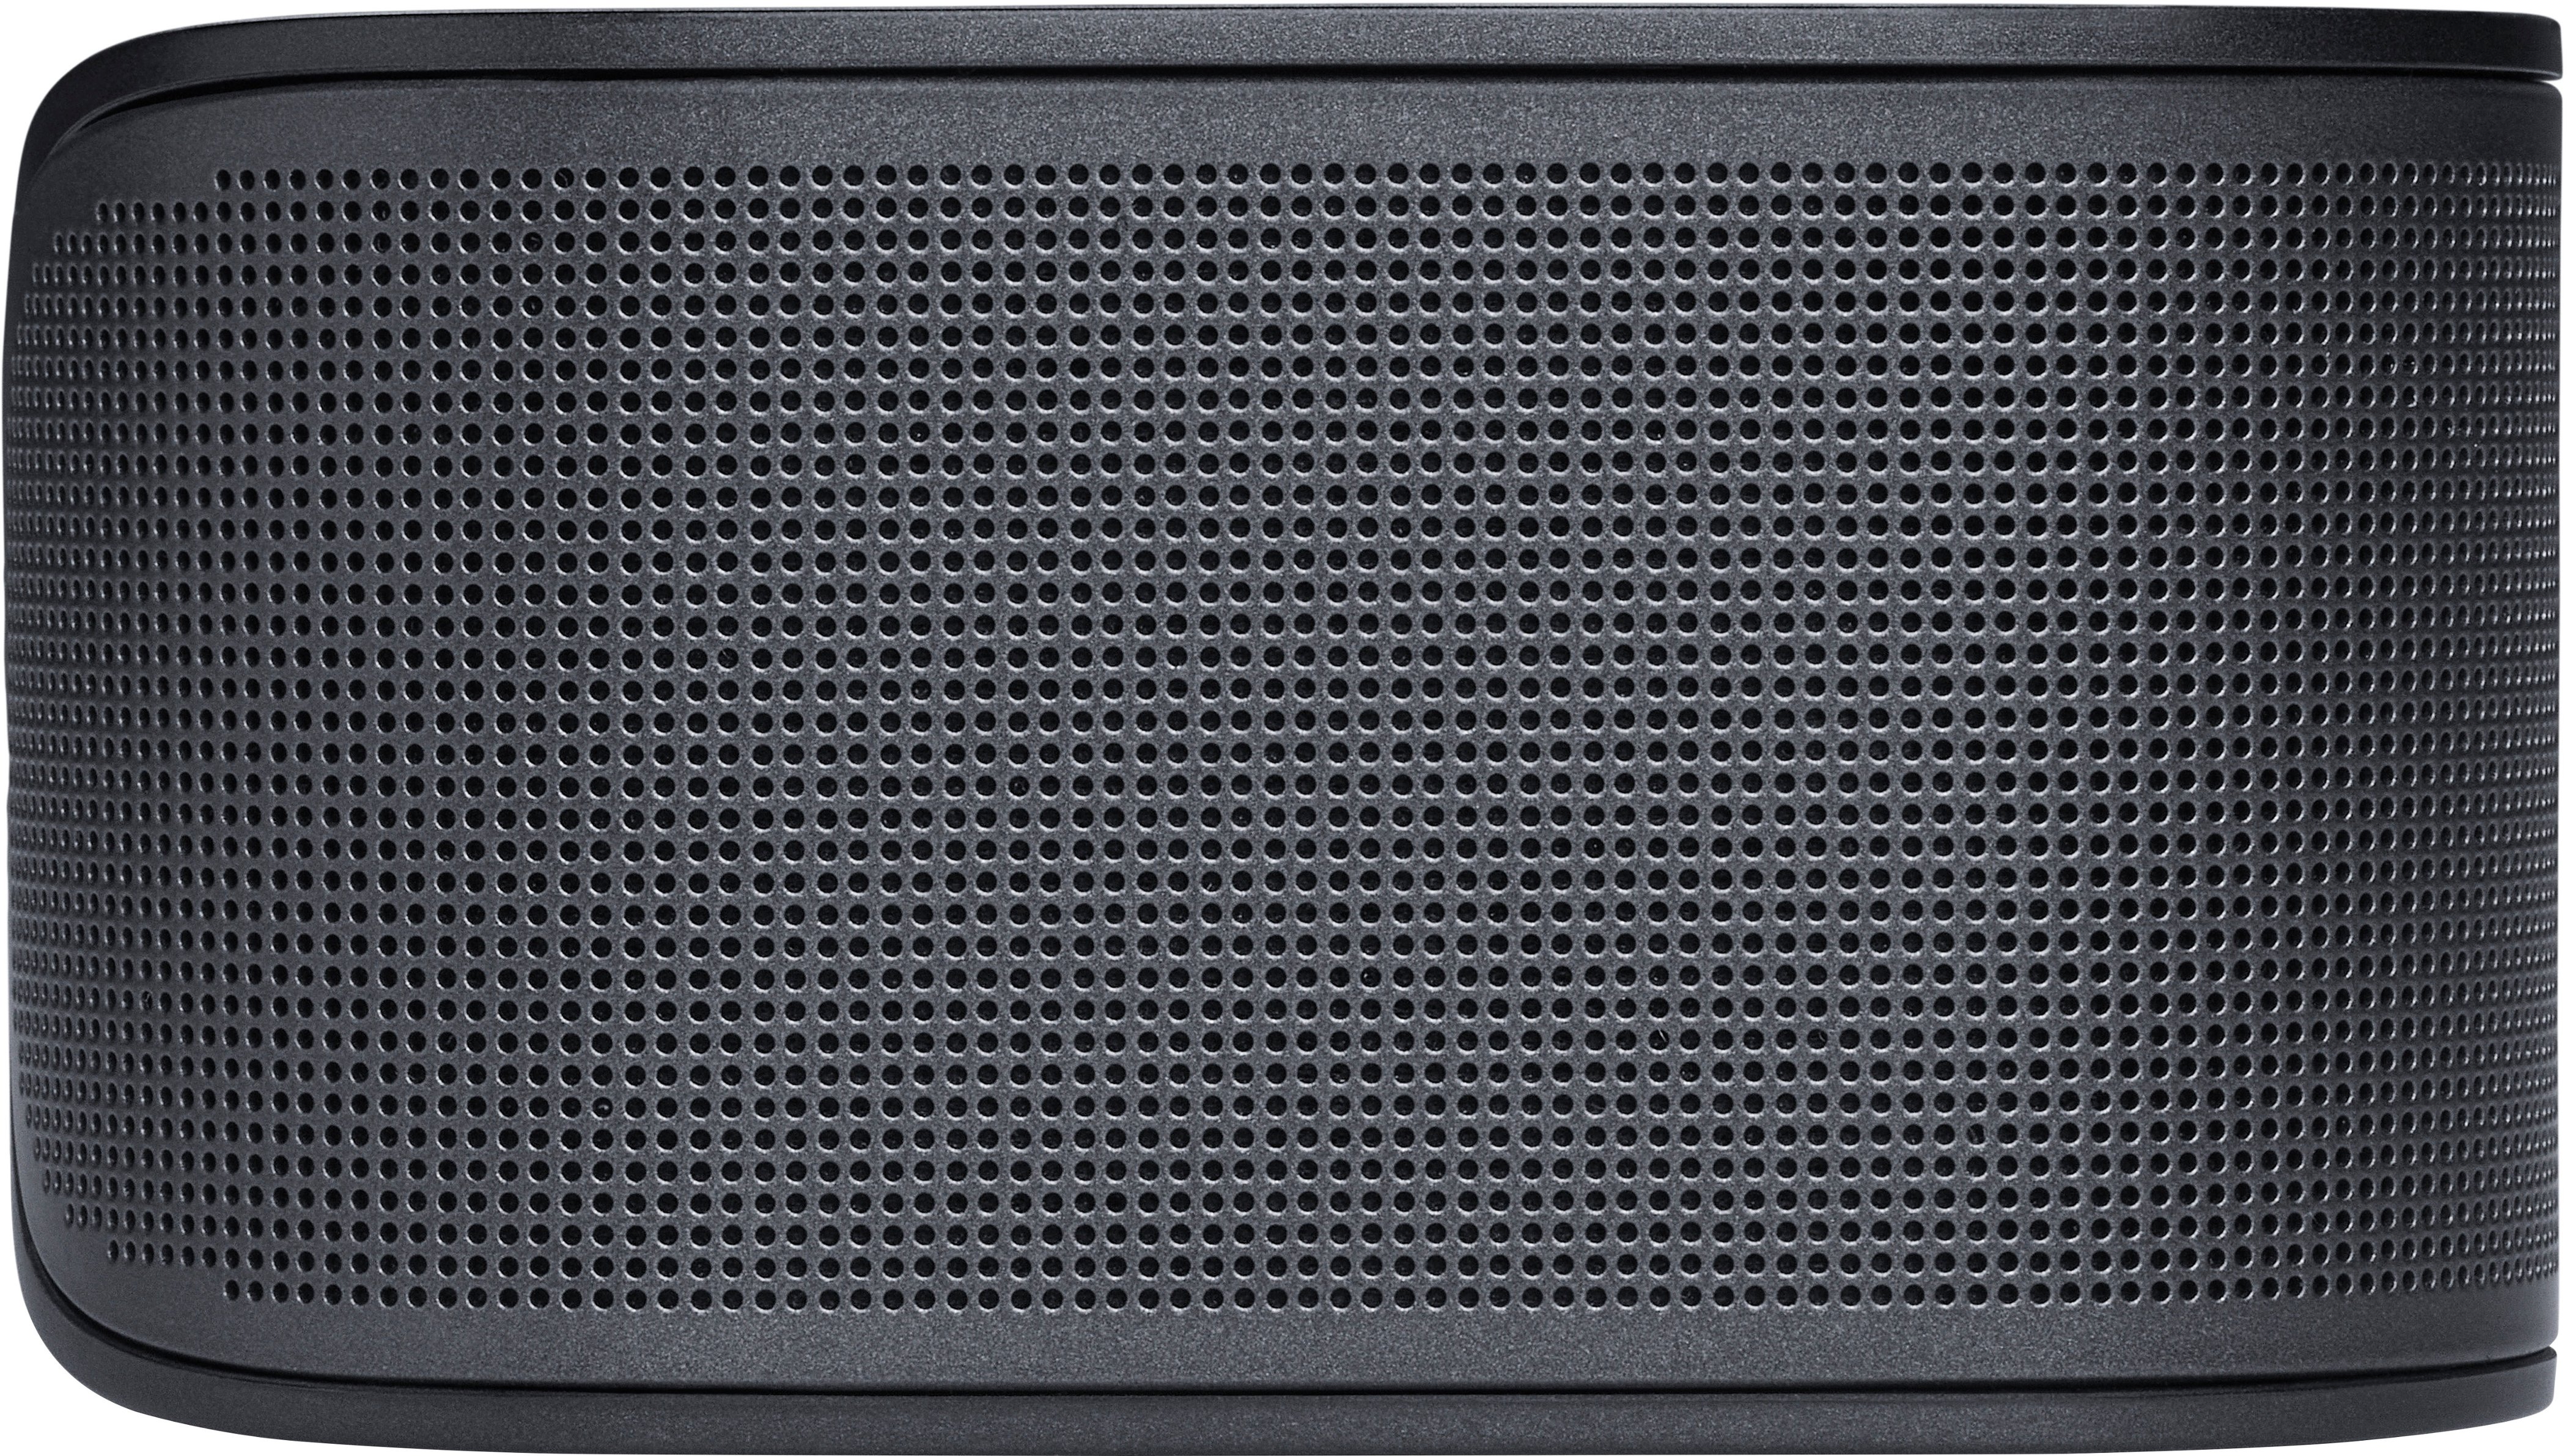 Multibeam and JBLBAR500PROBLKAM Dolby - Best JBL with 5.1ch Atmos Black BAR Buy Soundbar 500